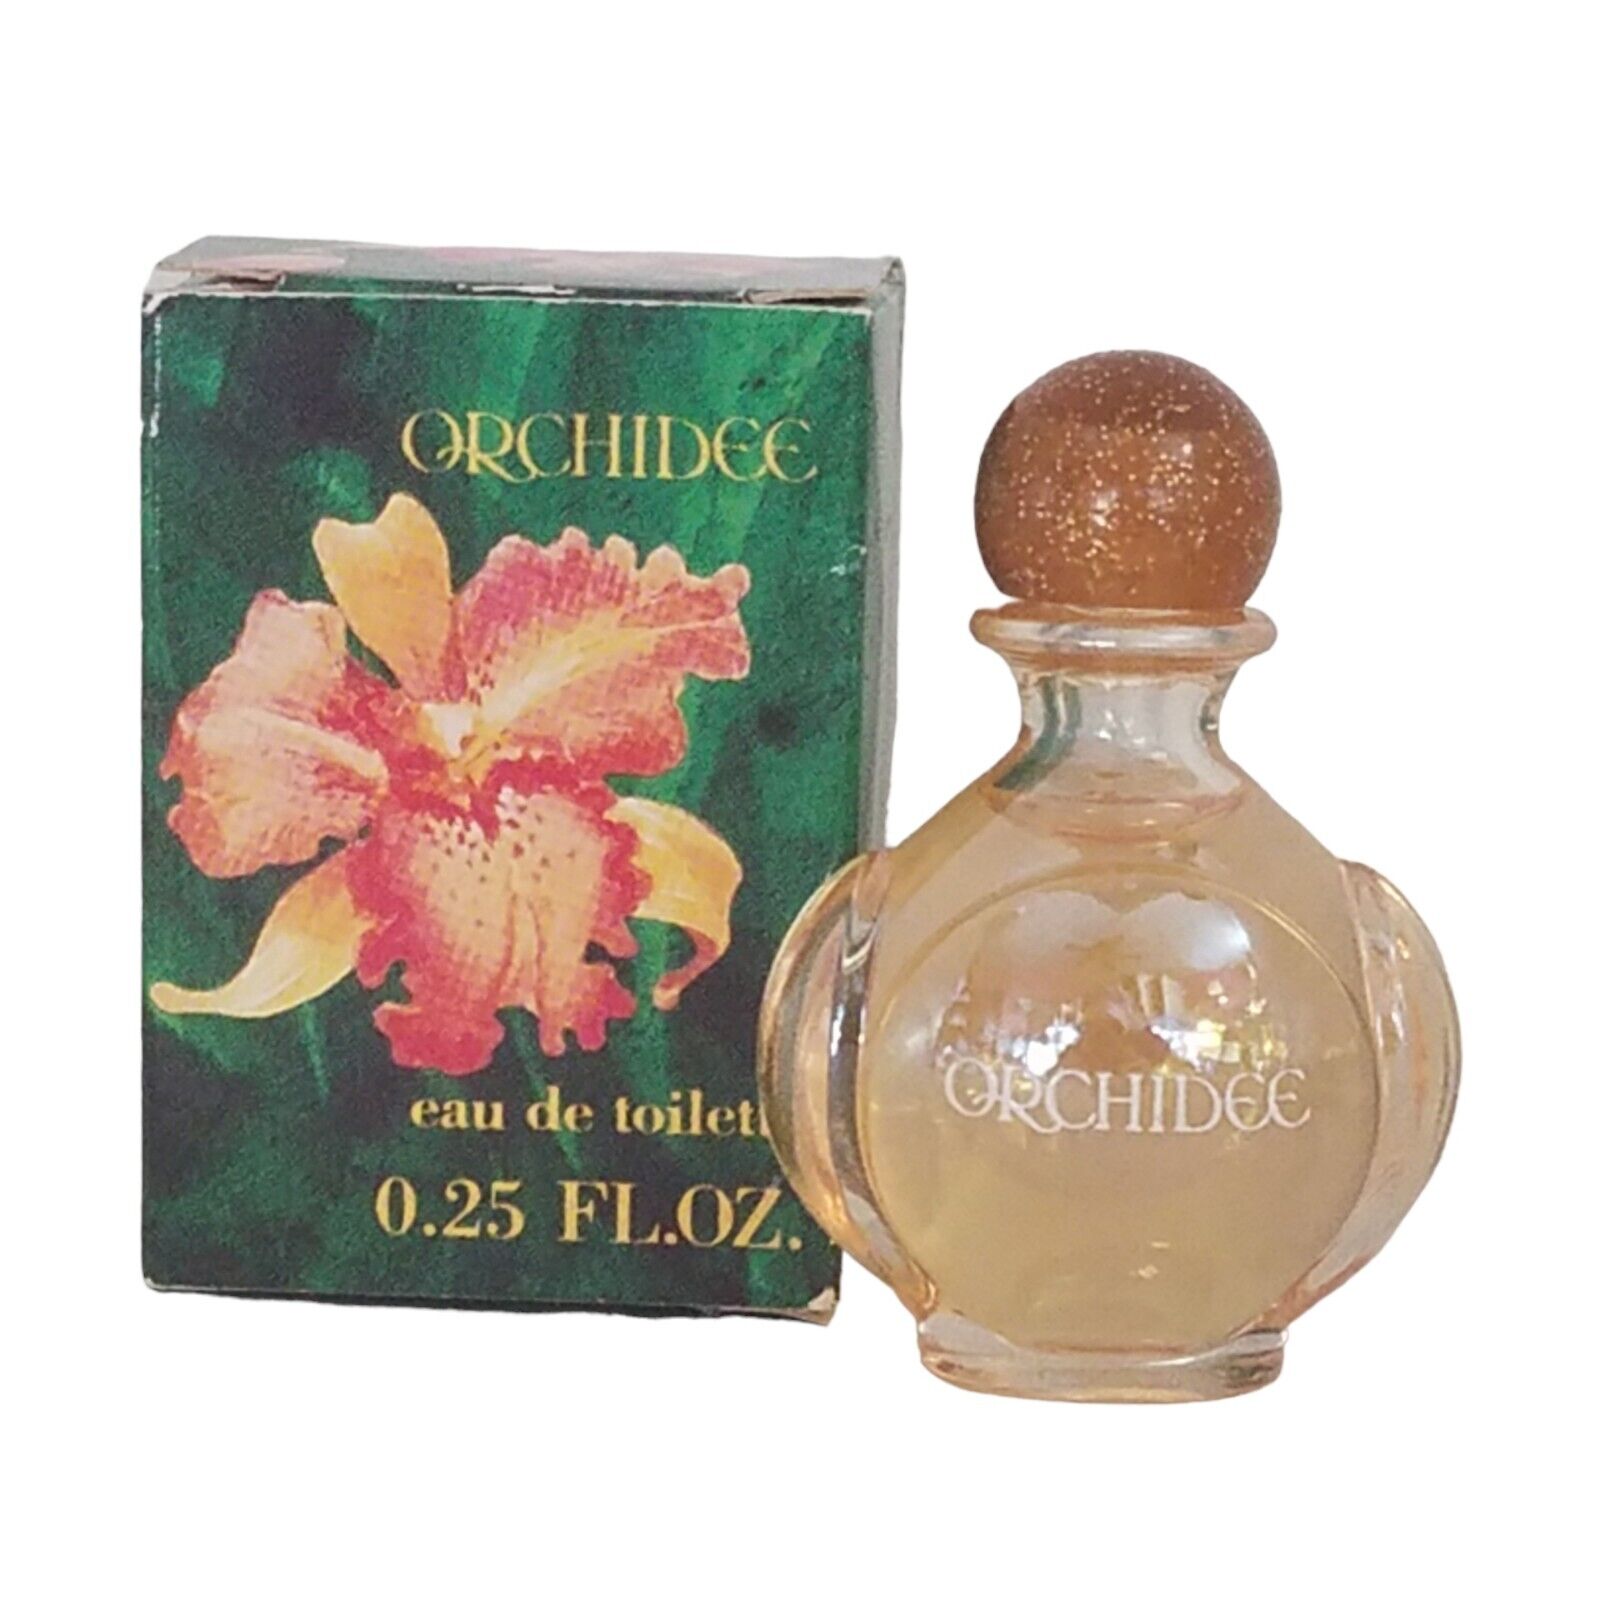 MINI Yves Rocher ORCHIDEE Orchid Eau De Toilette Travel Size 0.25 fl oz Vintage